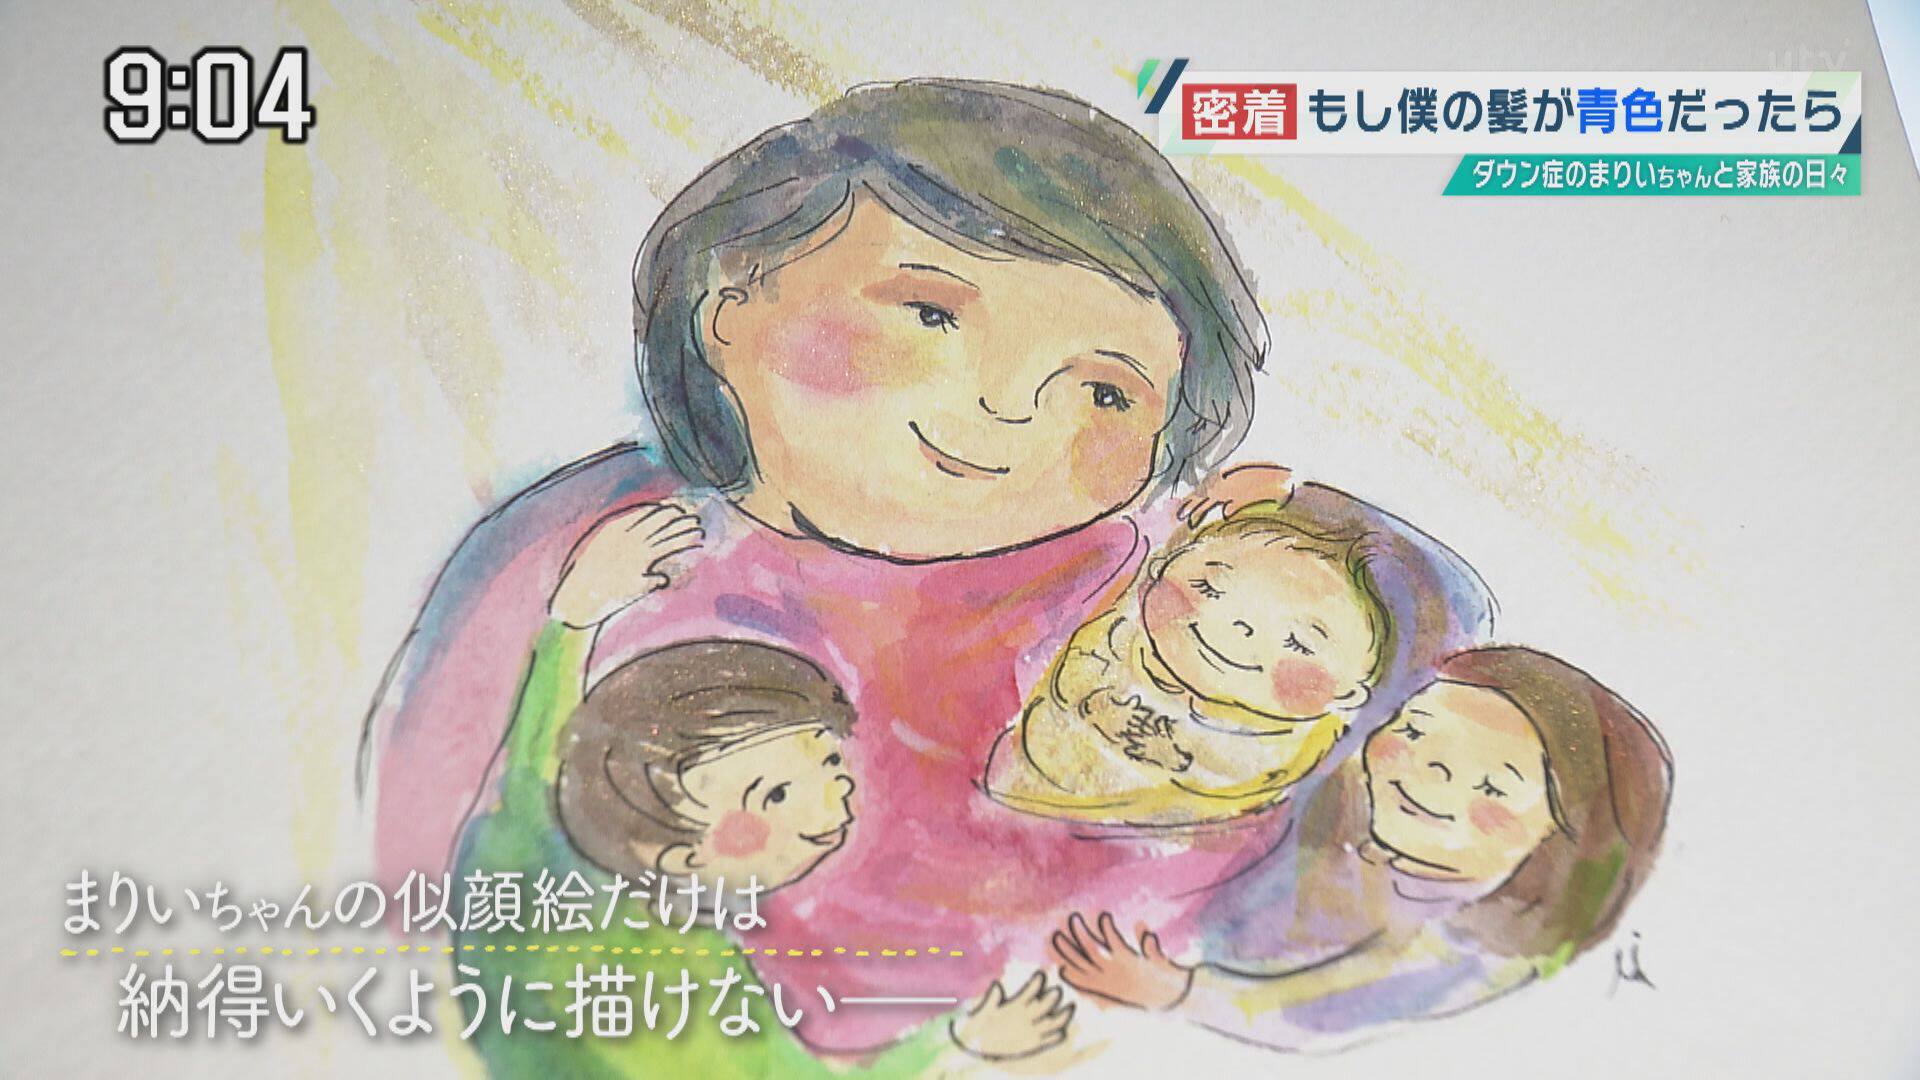 「まりいちゃんが生まれた頃」をテーマに、ガードナー瑞穂さんが描いた絵